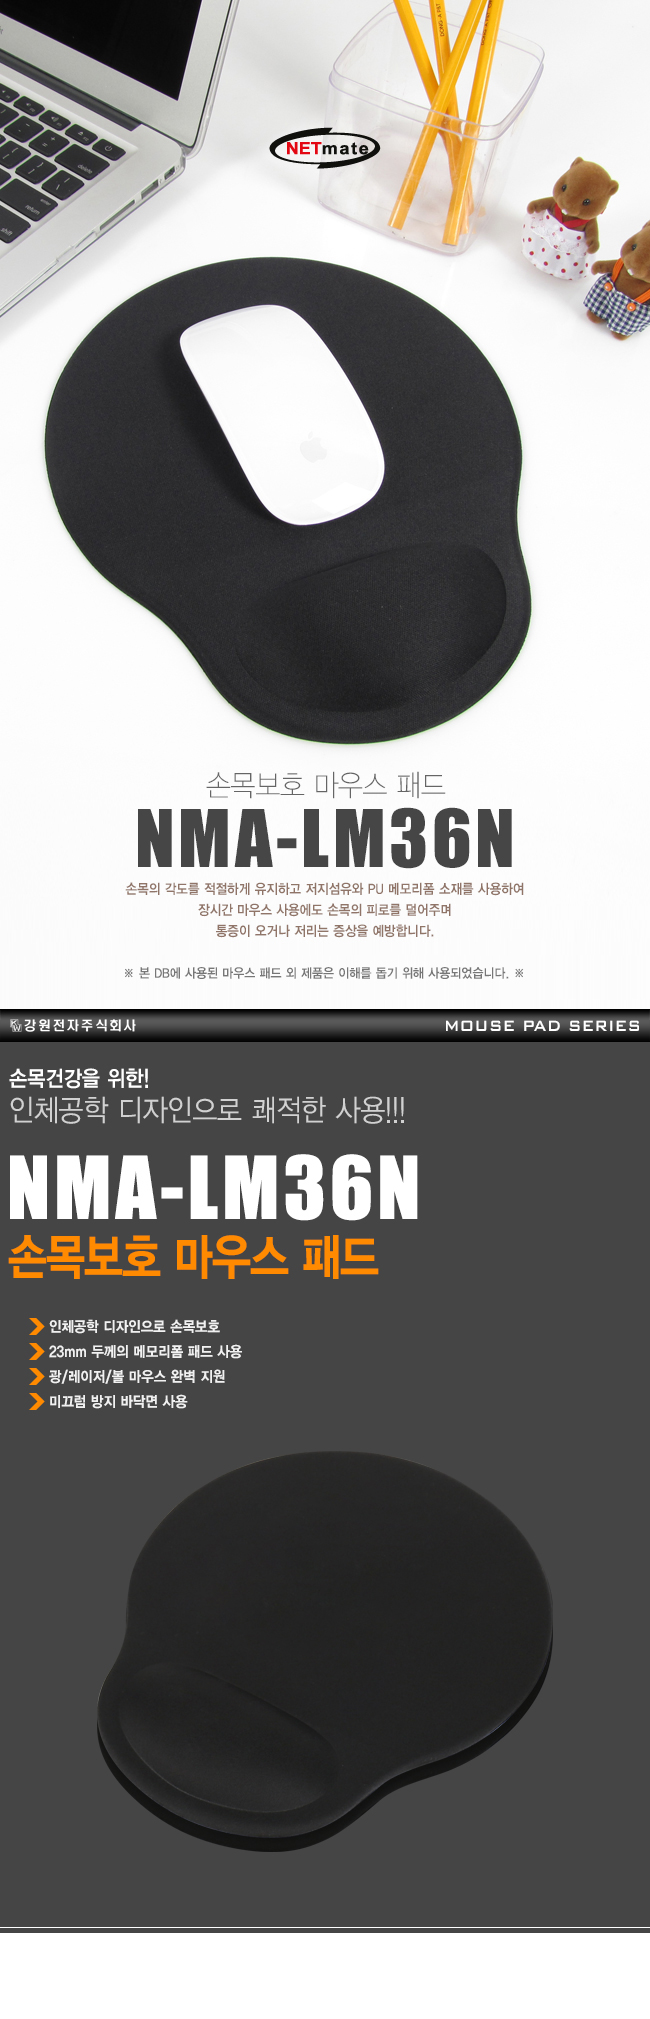 NMA-LM36N_01_01.jpg